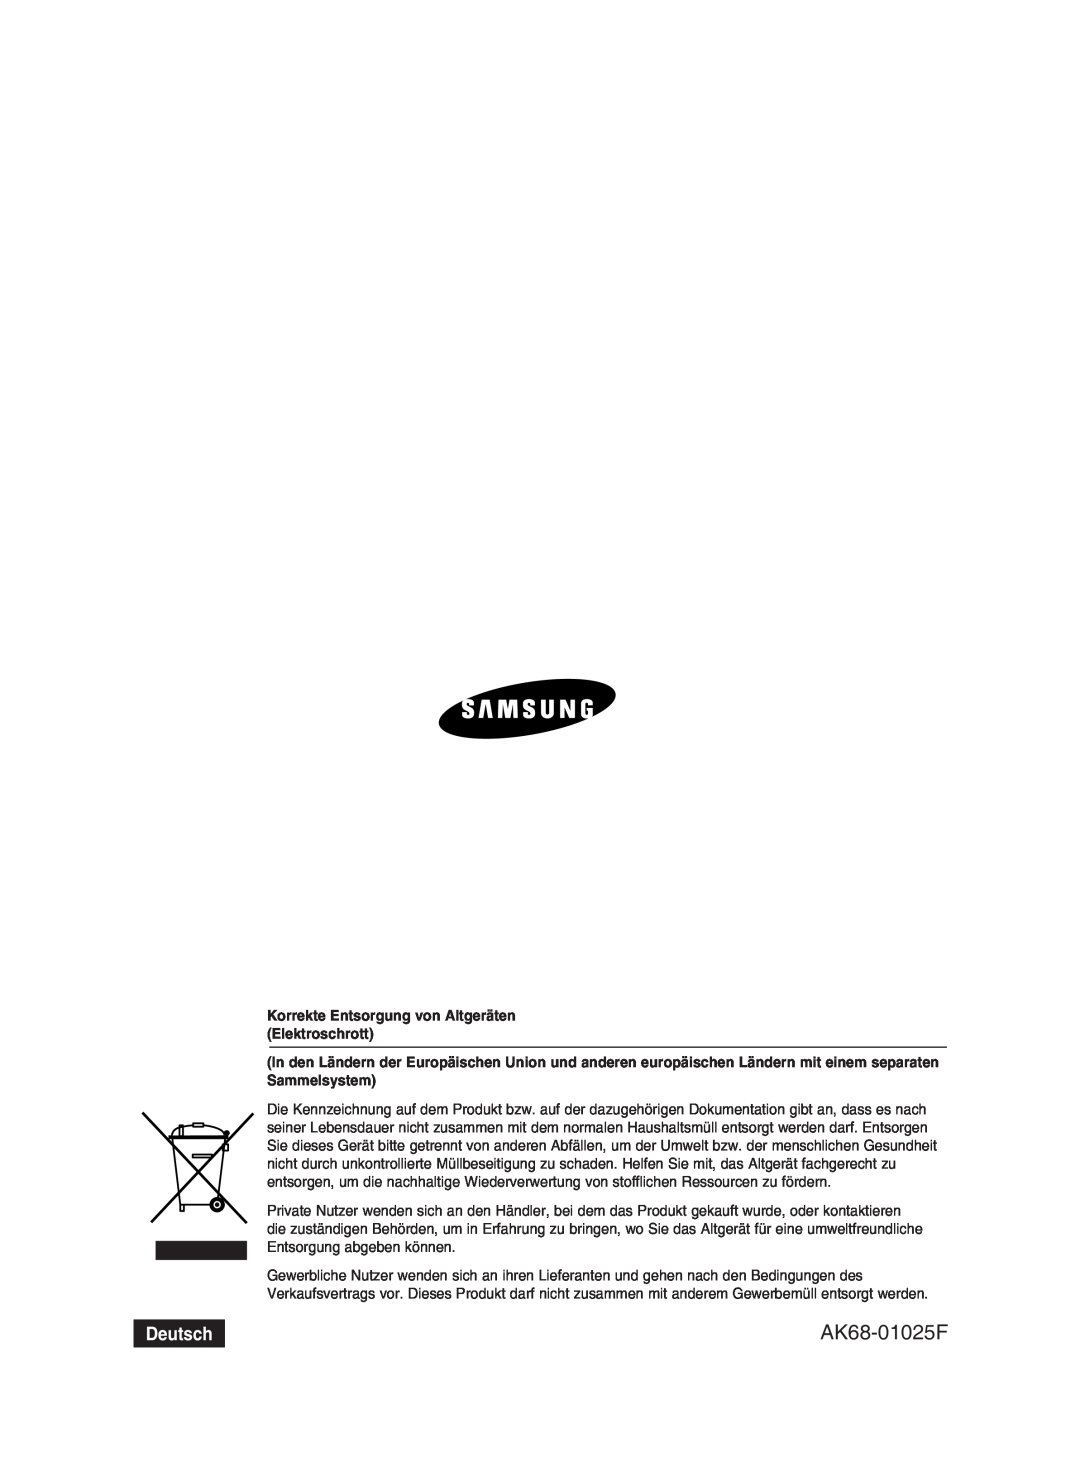 Samsung DVD-HR734/XEG, DVD-HR730/XEC, DVD-HR730/XEB AK68-01025F, Deutsch, Korrekte Entsorgung von Altgeräten Elektroschrott 